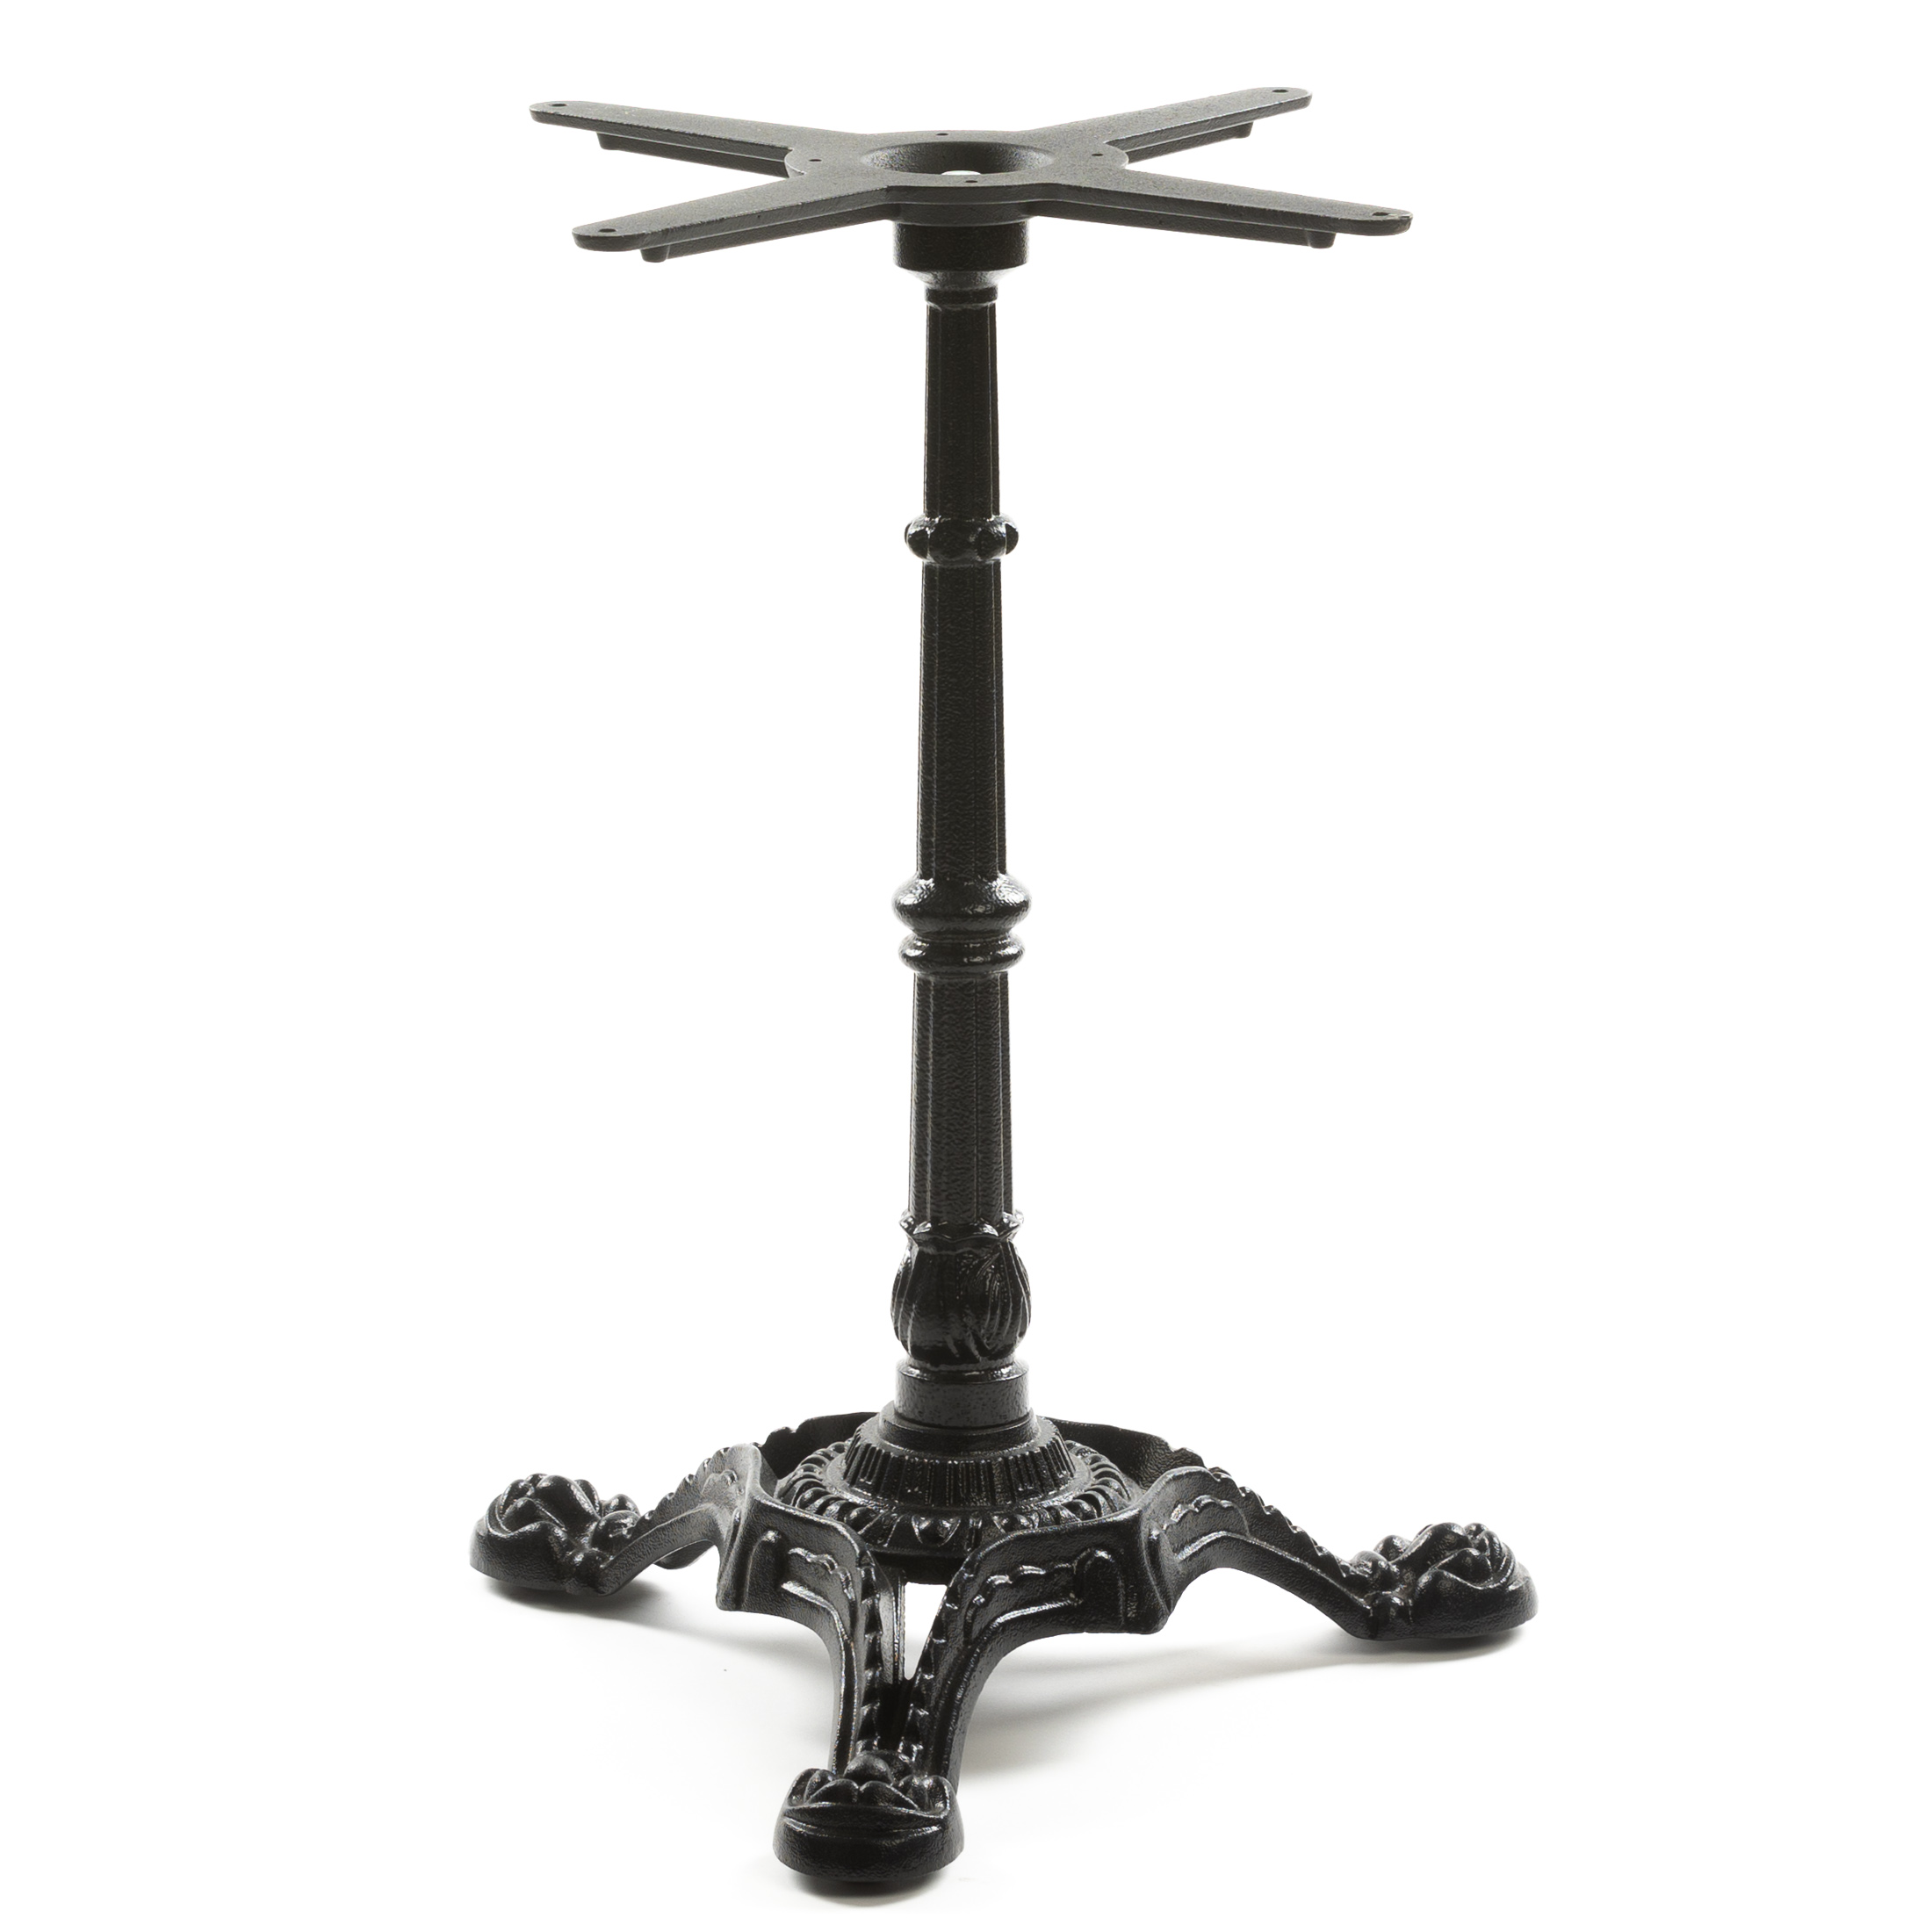 Premium Tischgestell PJ7017 aus Gusseisen, schwarz, antikes Design, 3-zehig